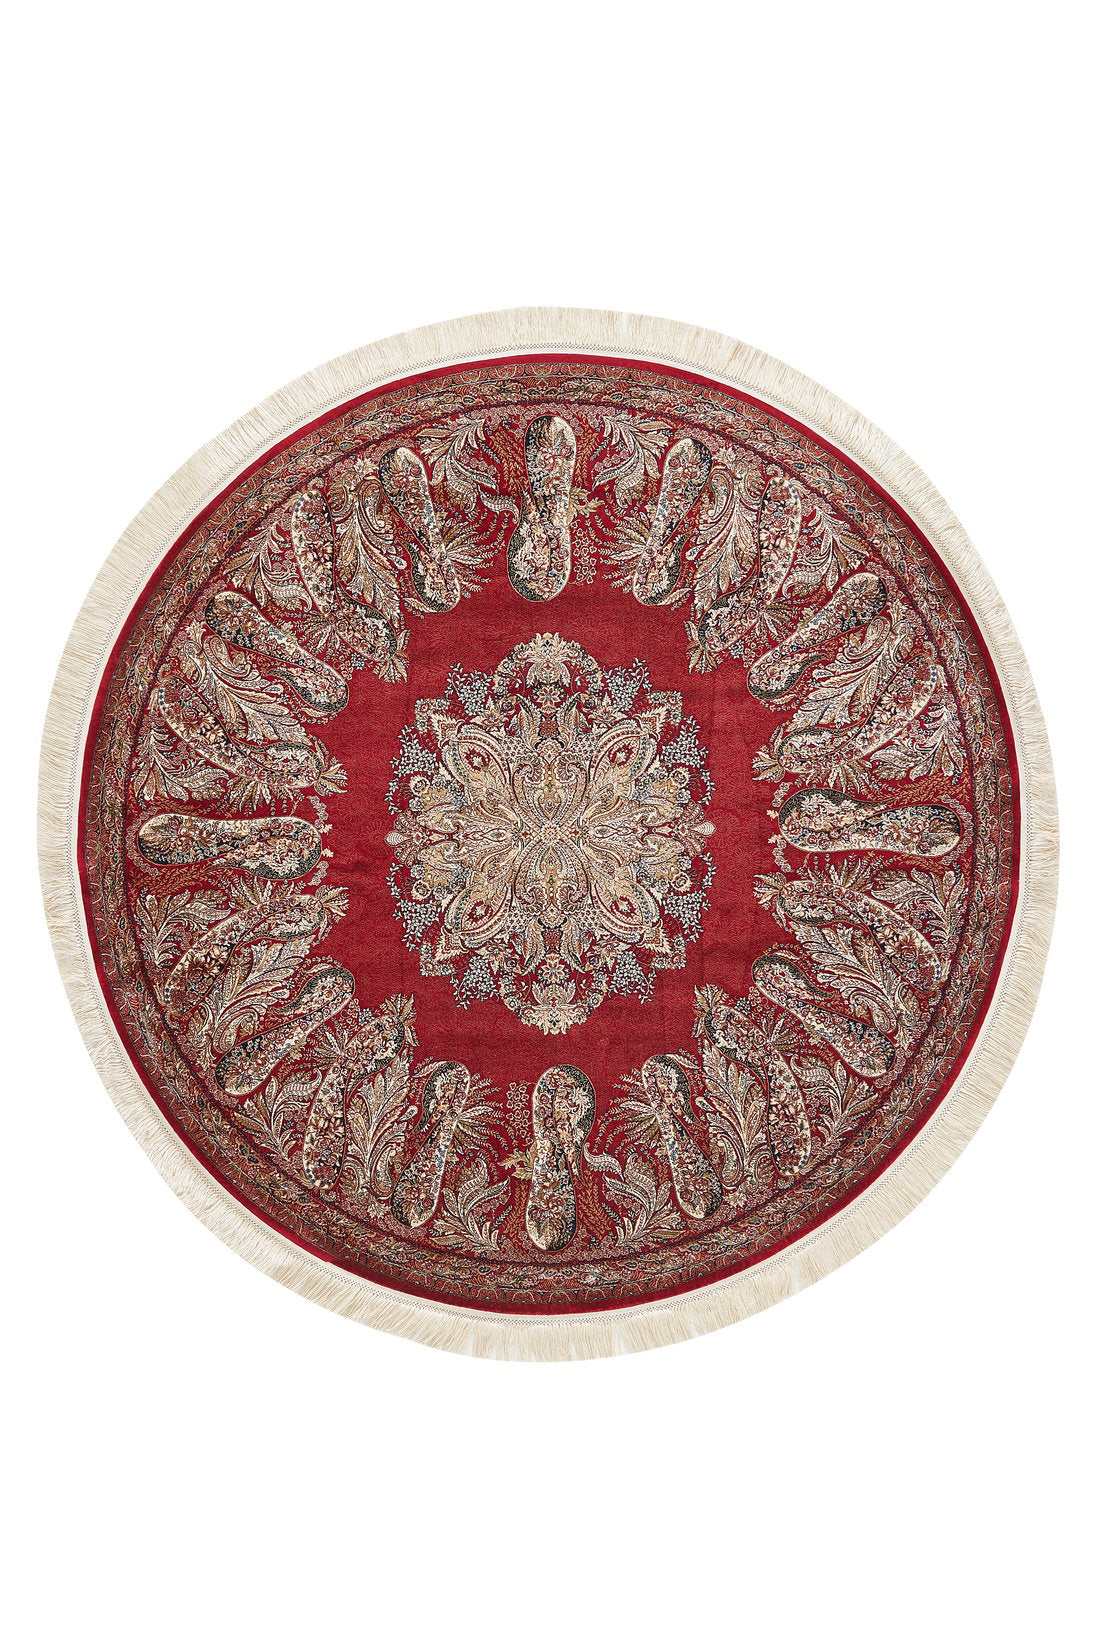 Old World Floral Türkischer Teppich – Purpurrot – 2219H 